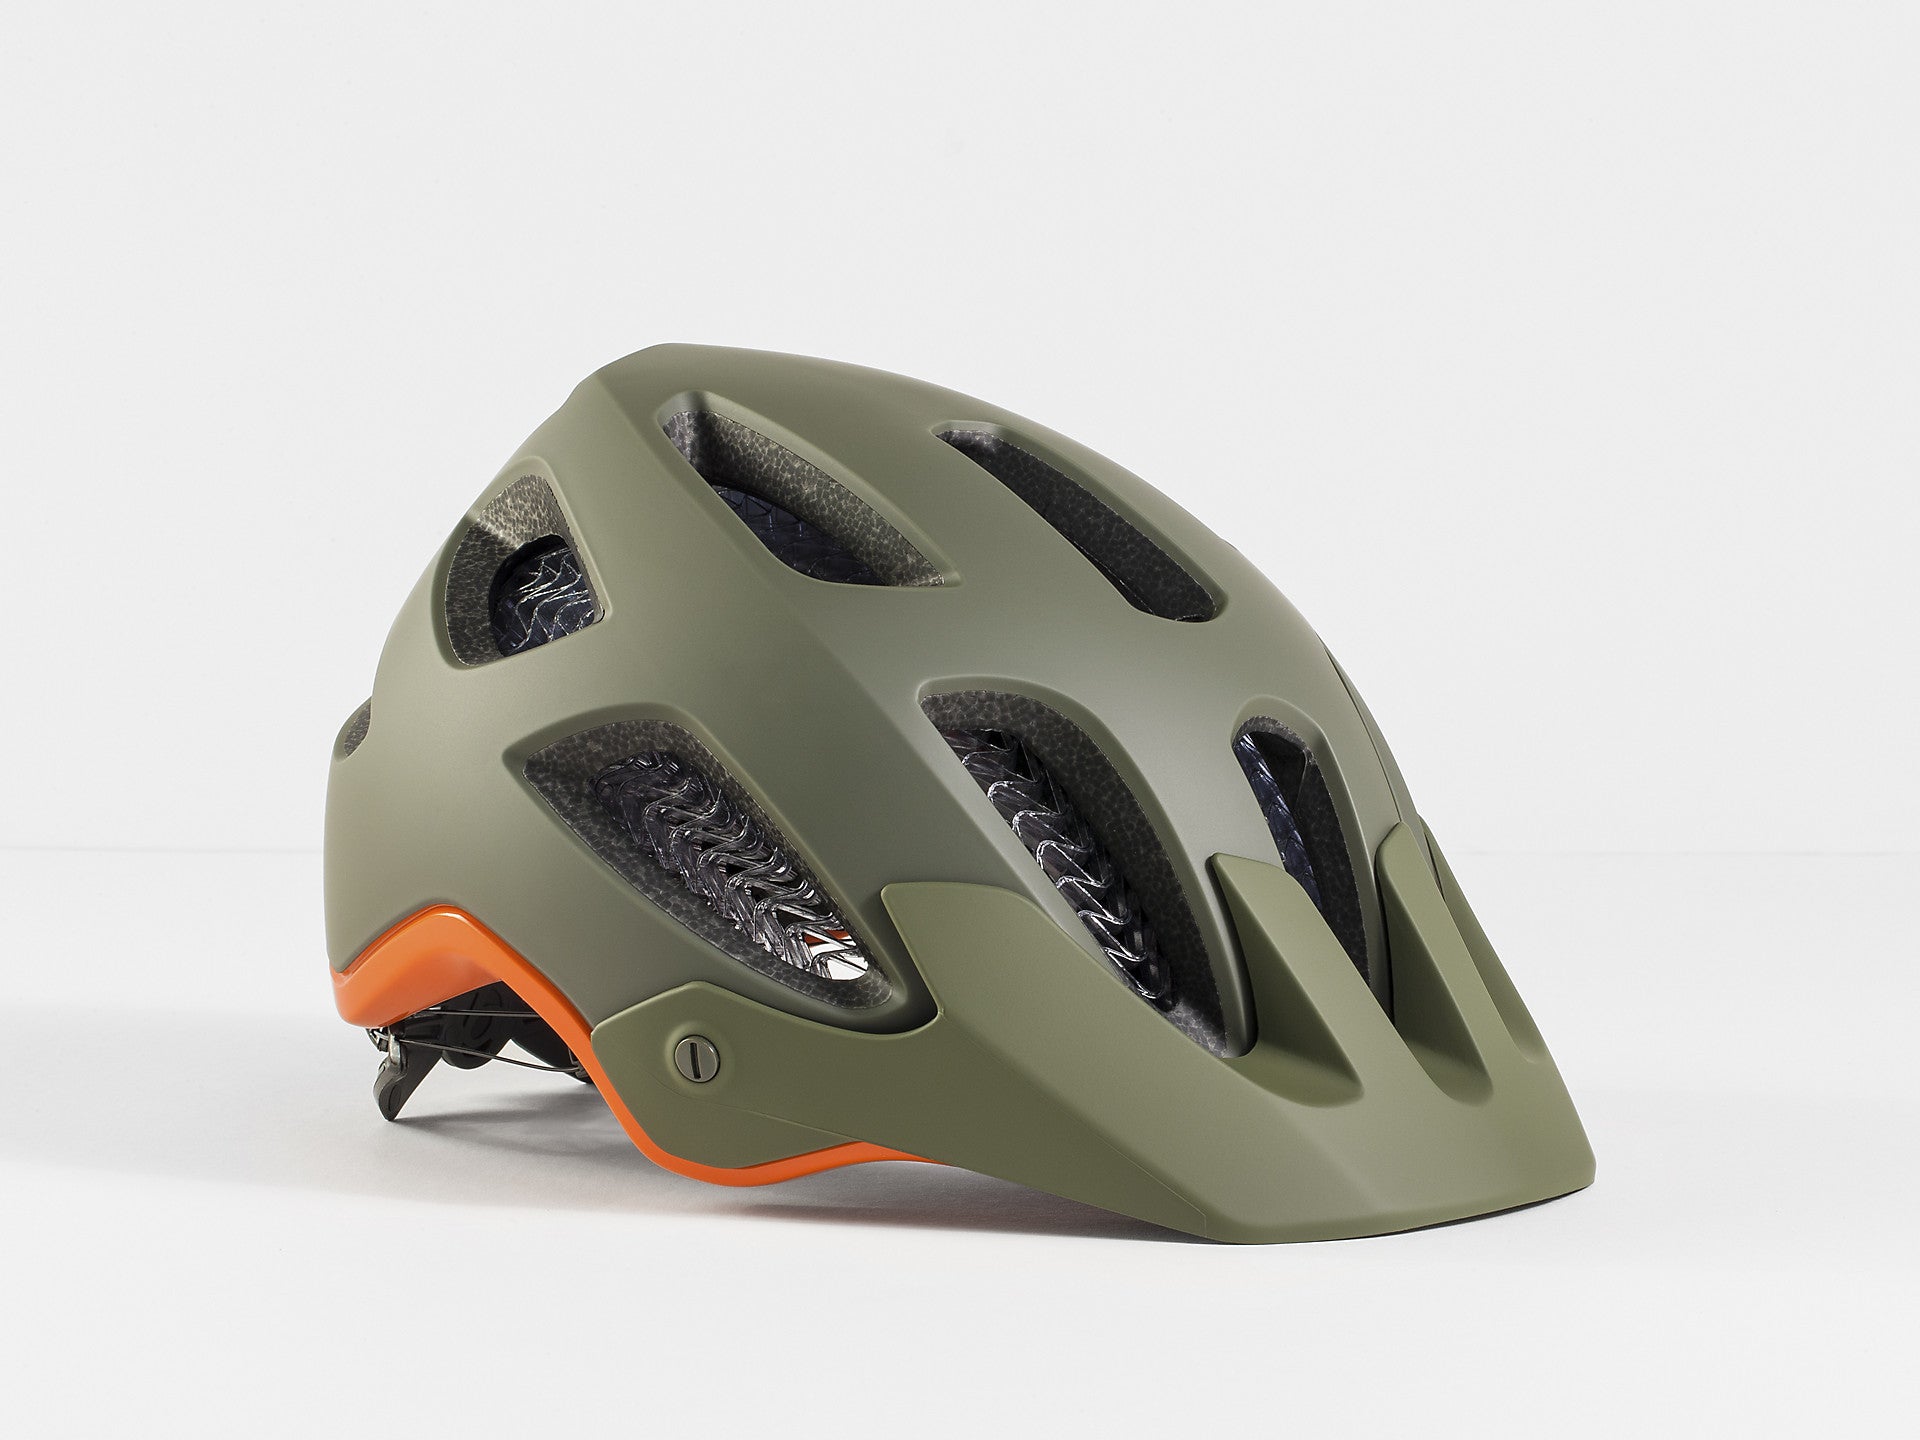 Bontrager Rally WaveCel Mountain Bike Helmet- Bike Helmets- Wavecel technology- CPSC Standard